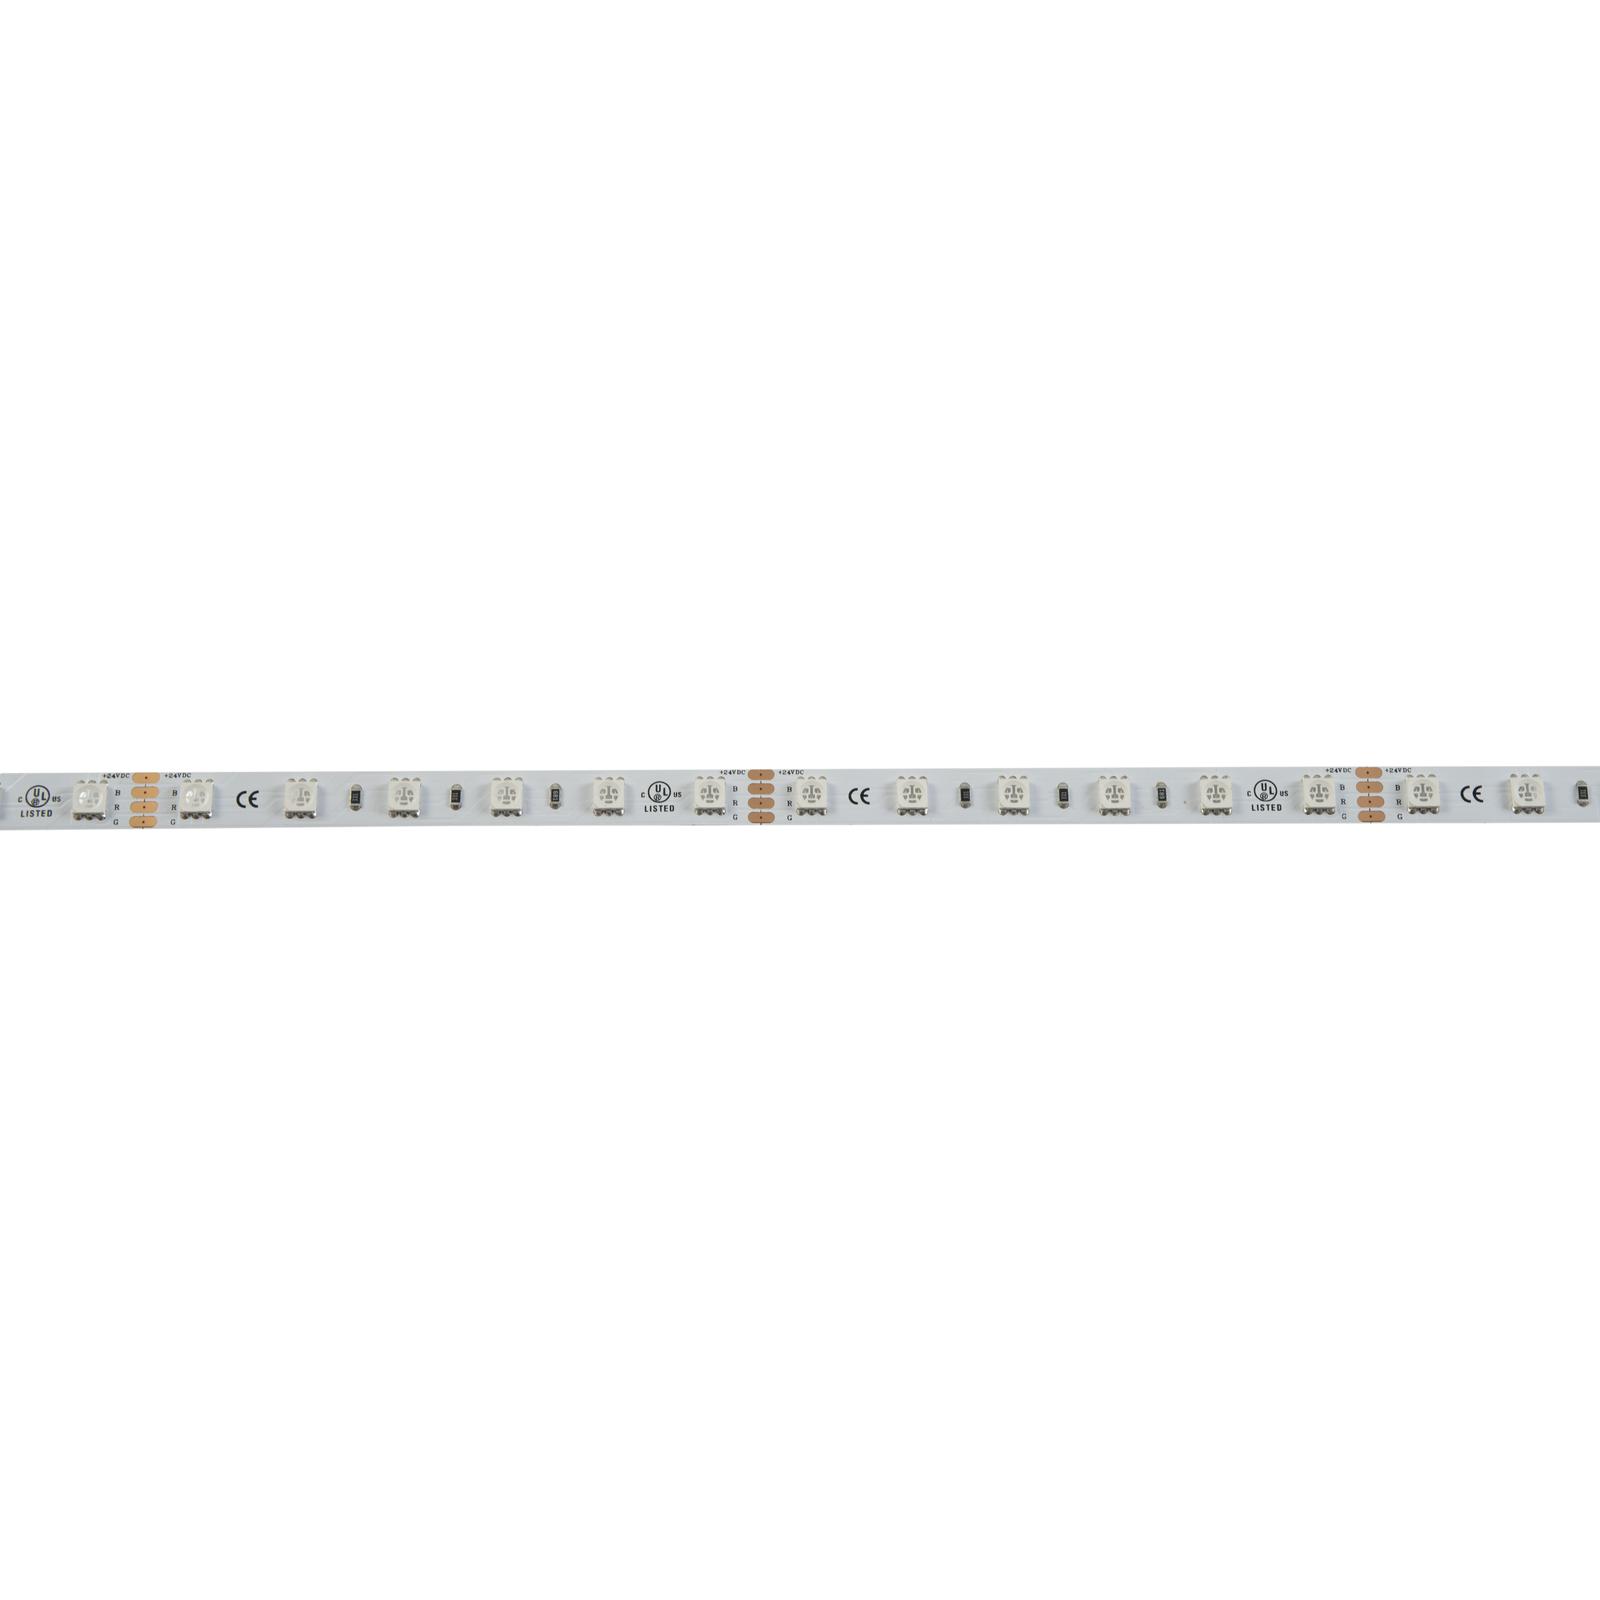 LED Strip 300 5m 5050 RGB 12V - eurolite